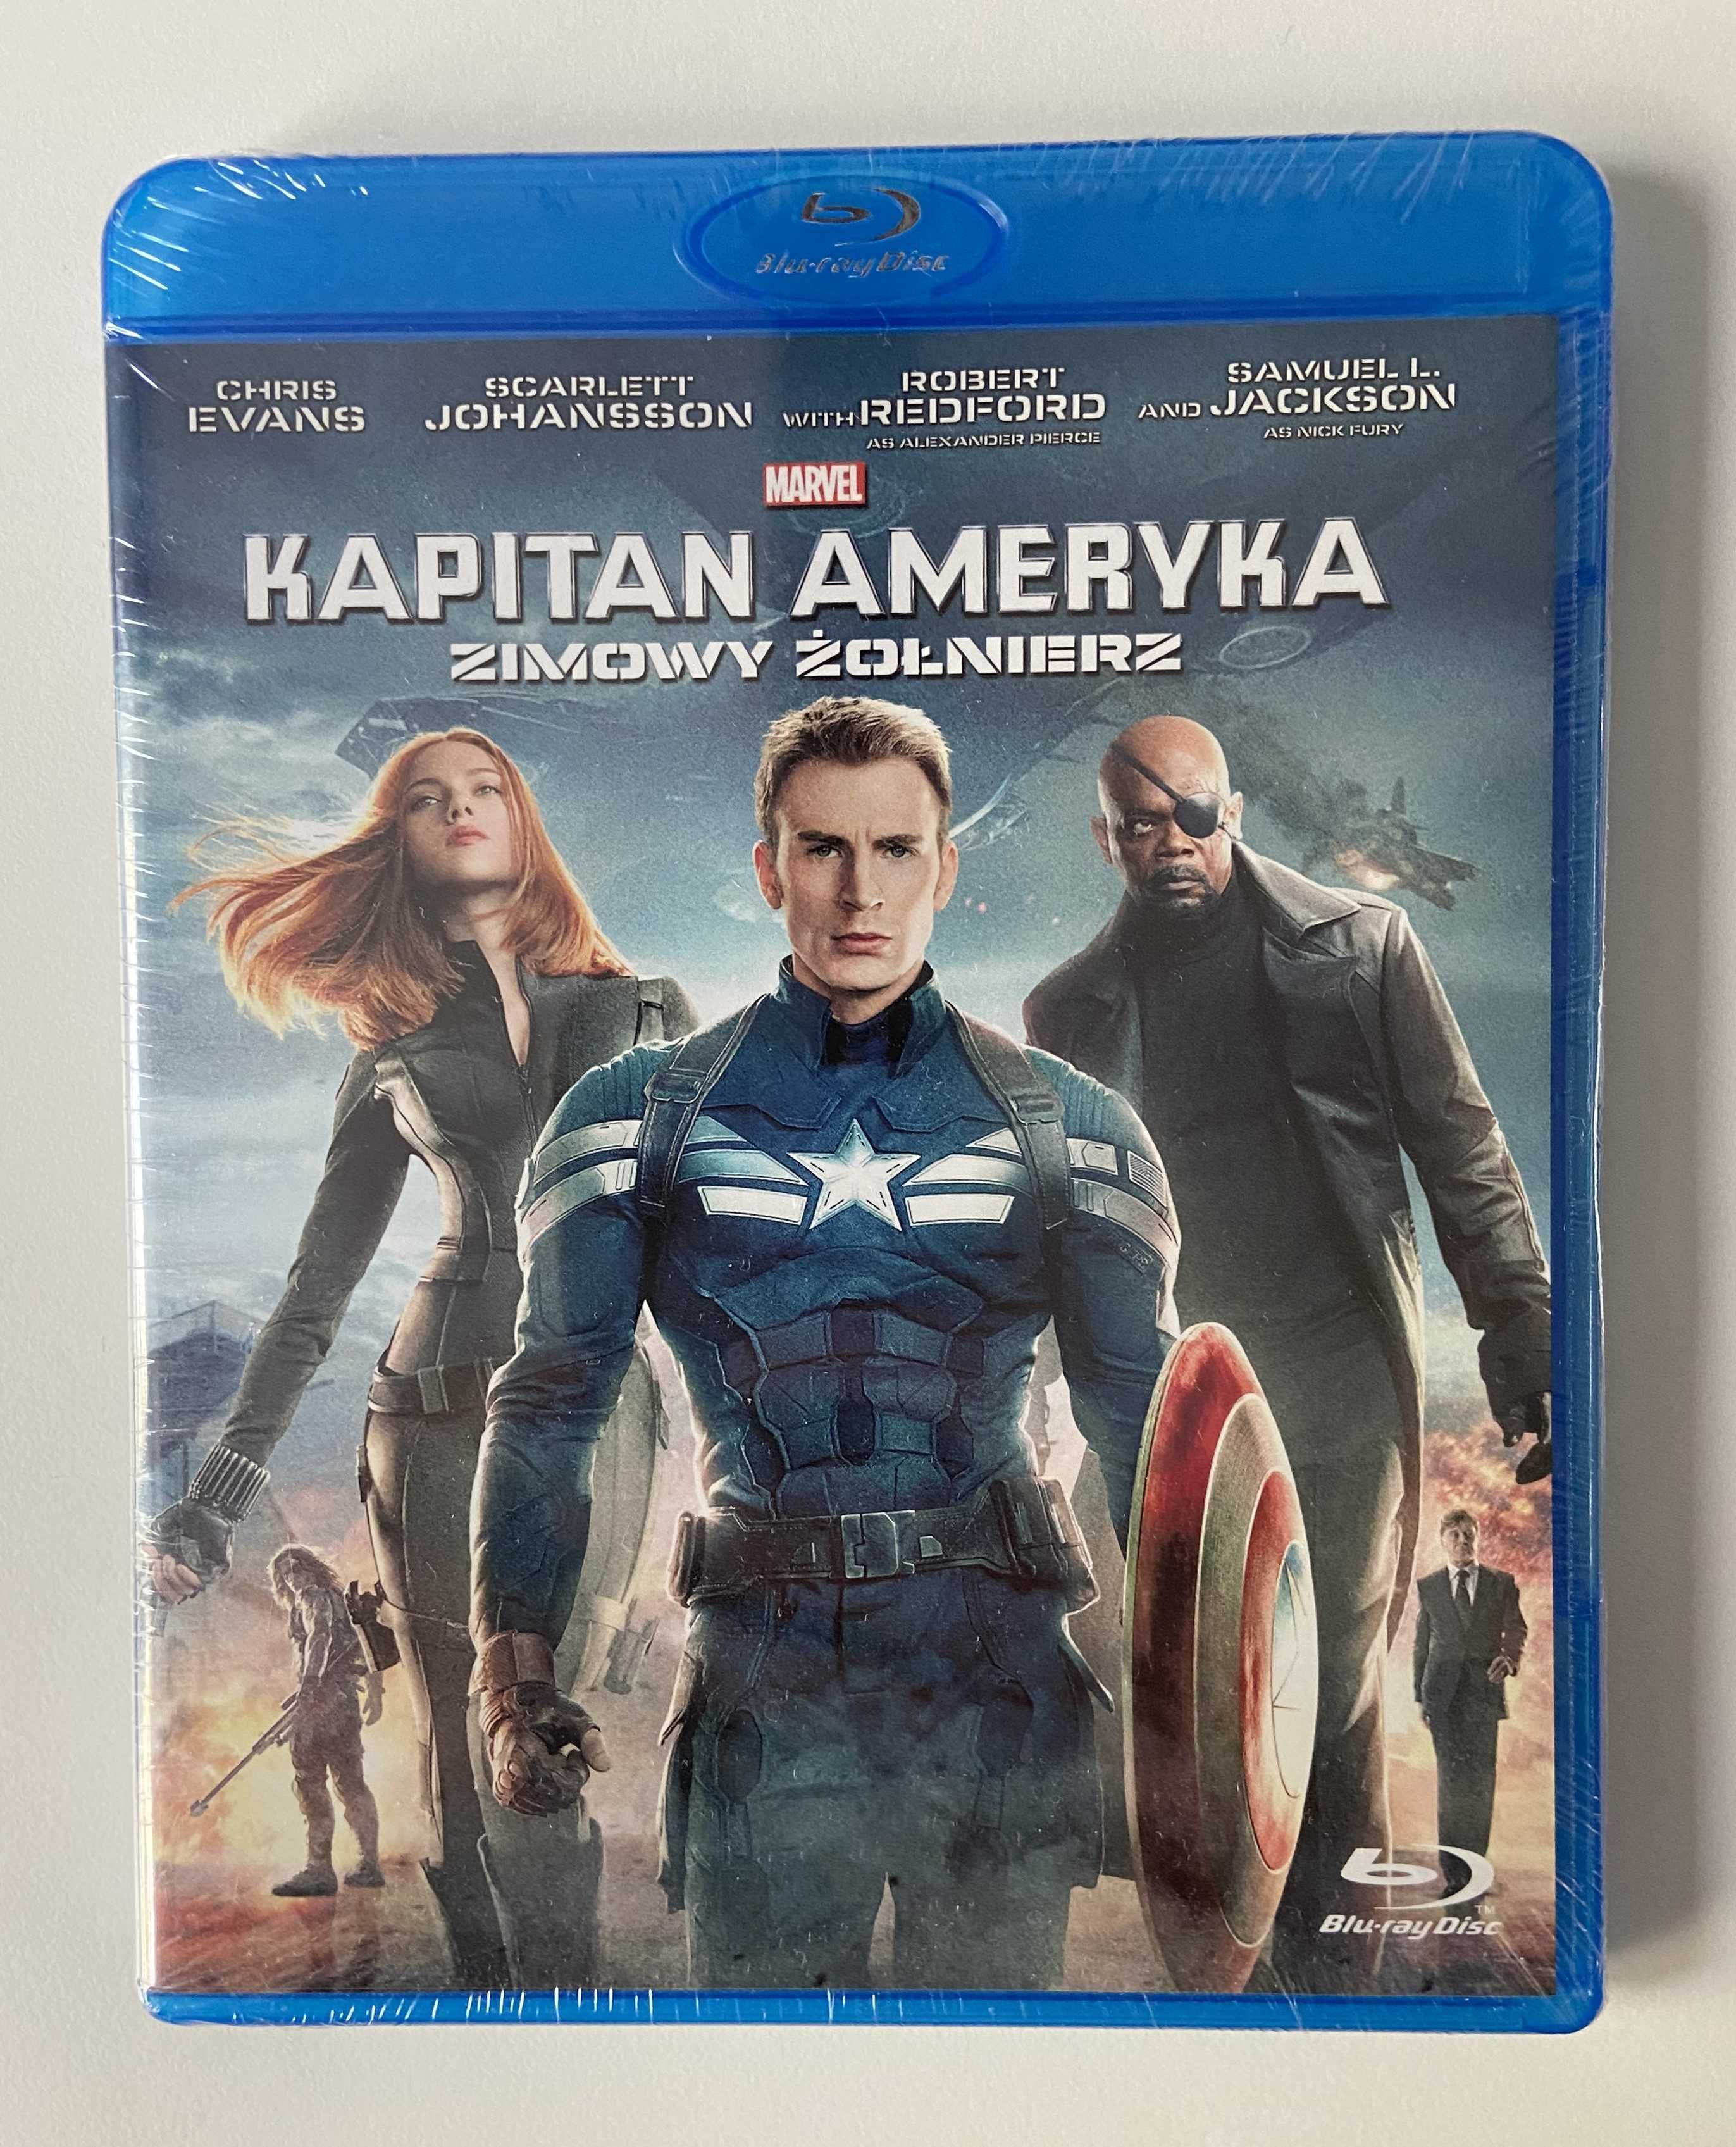 Kapitan Ameryka: Zimowy Żołnierz Blu-ray